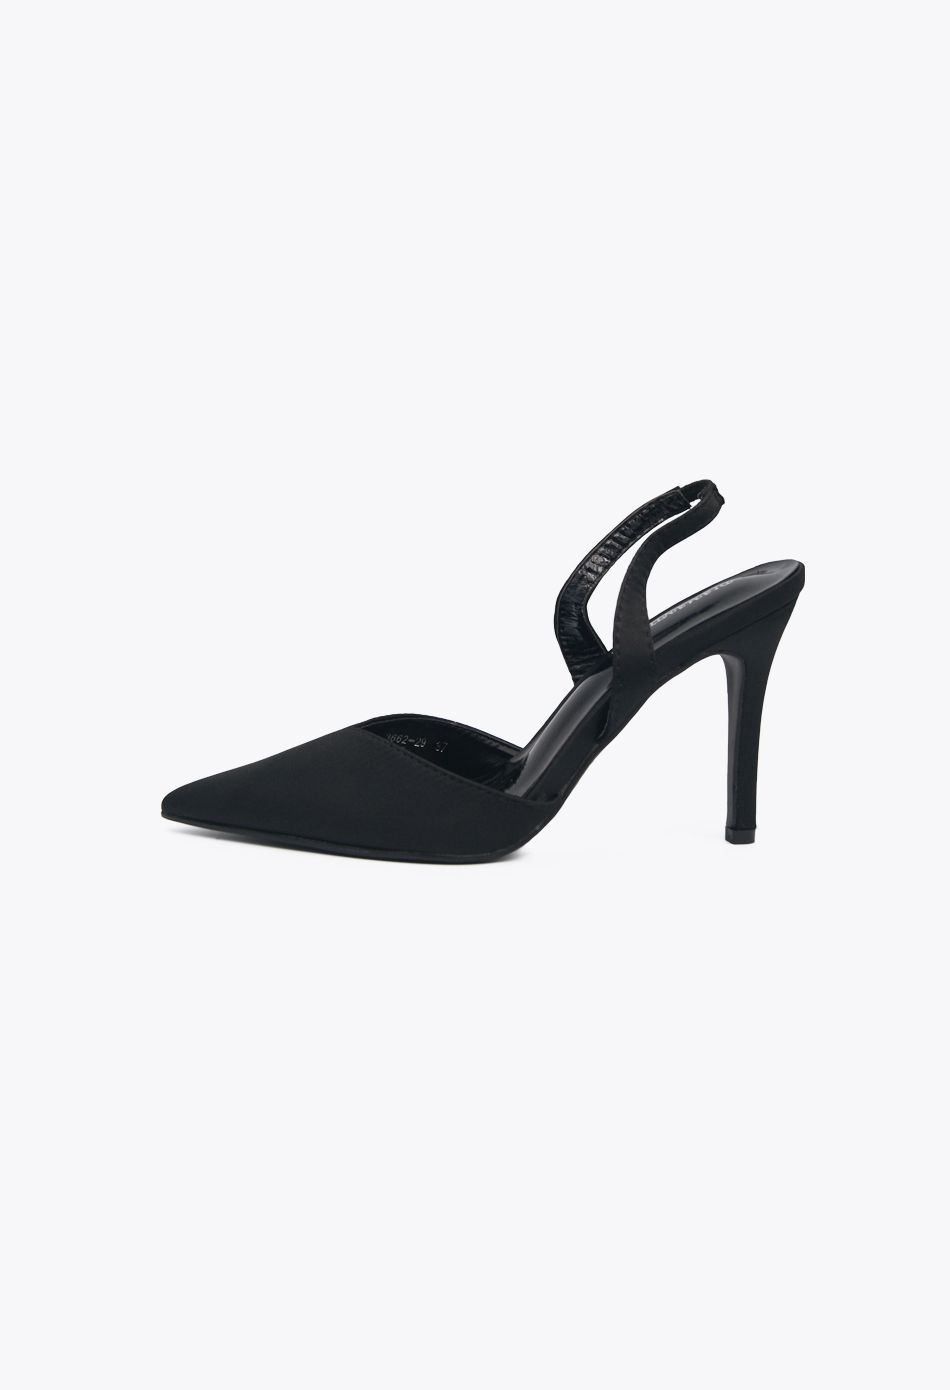 Μυτερές Γόβες με Χαμηλό Ψηλό Τακούνι με λουράκι Μαύρες (Μεγάλα Νούμερα 41, 42, 43, 44) / DM959-black Ανοιχτά Παπούτσια joya.gr